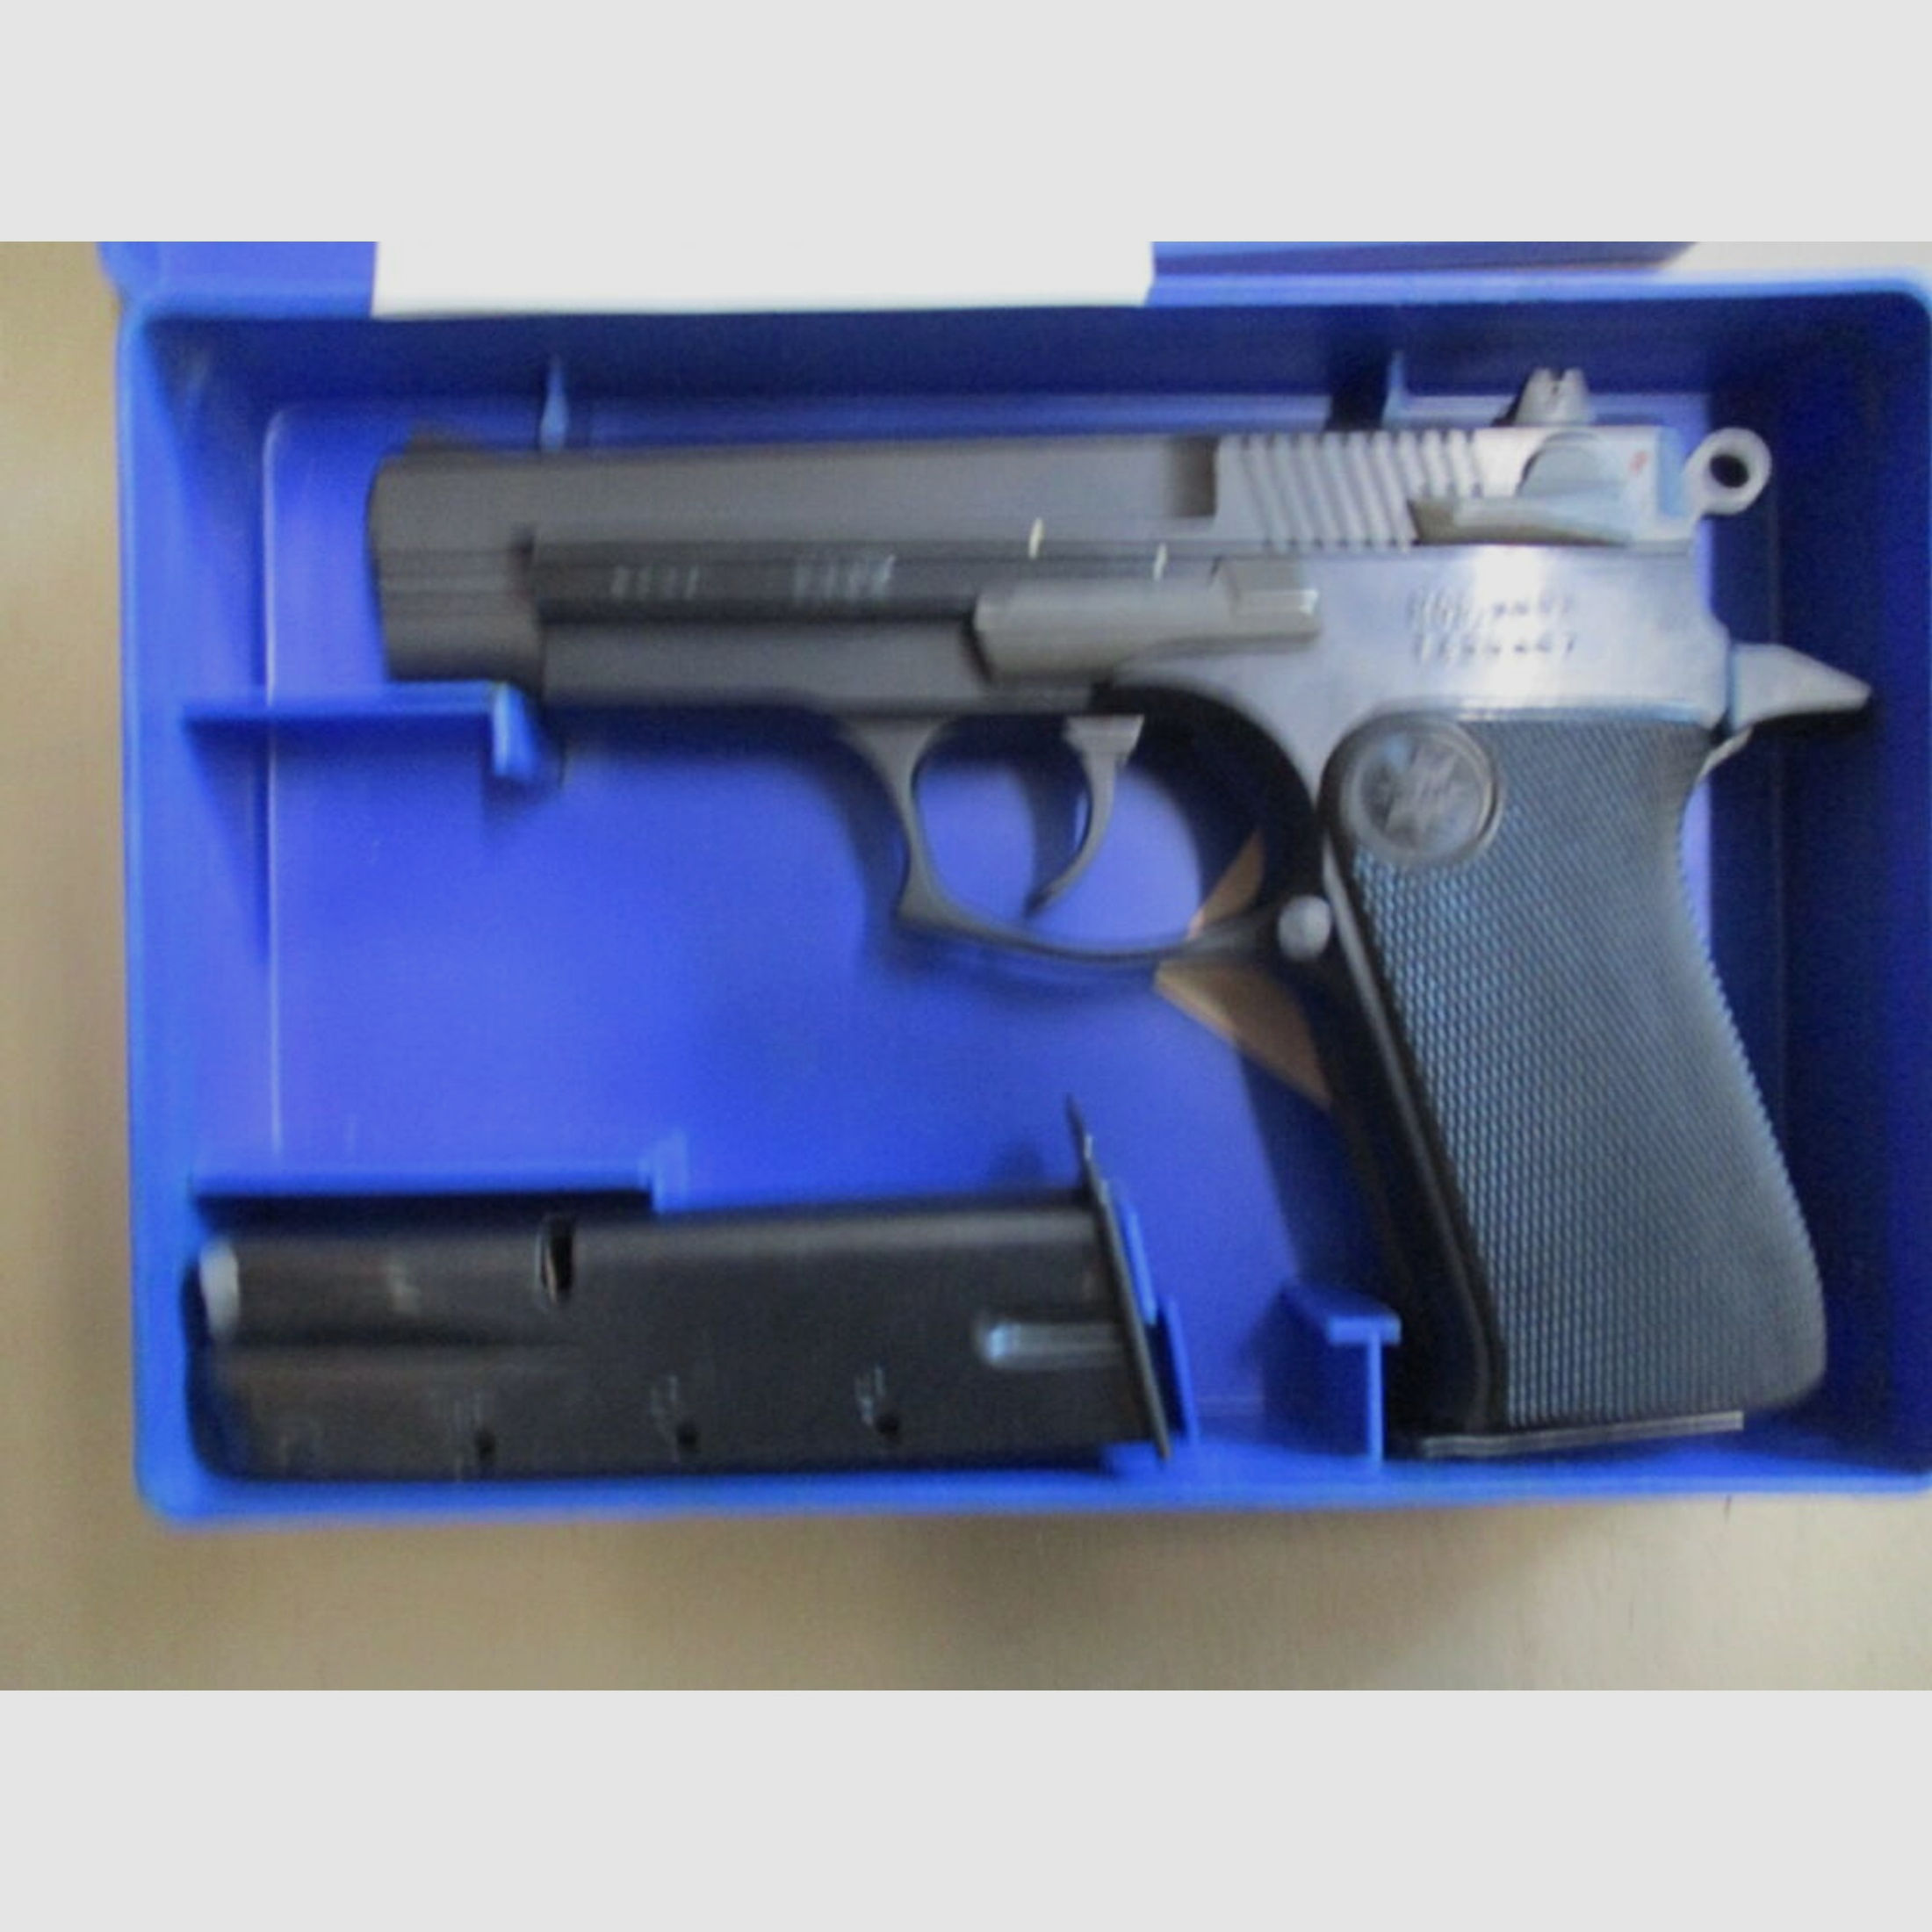 Pistole Star PK28 9mm Luger mit Reservemagazin und Papieren	 PK28